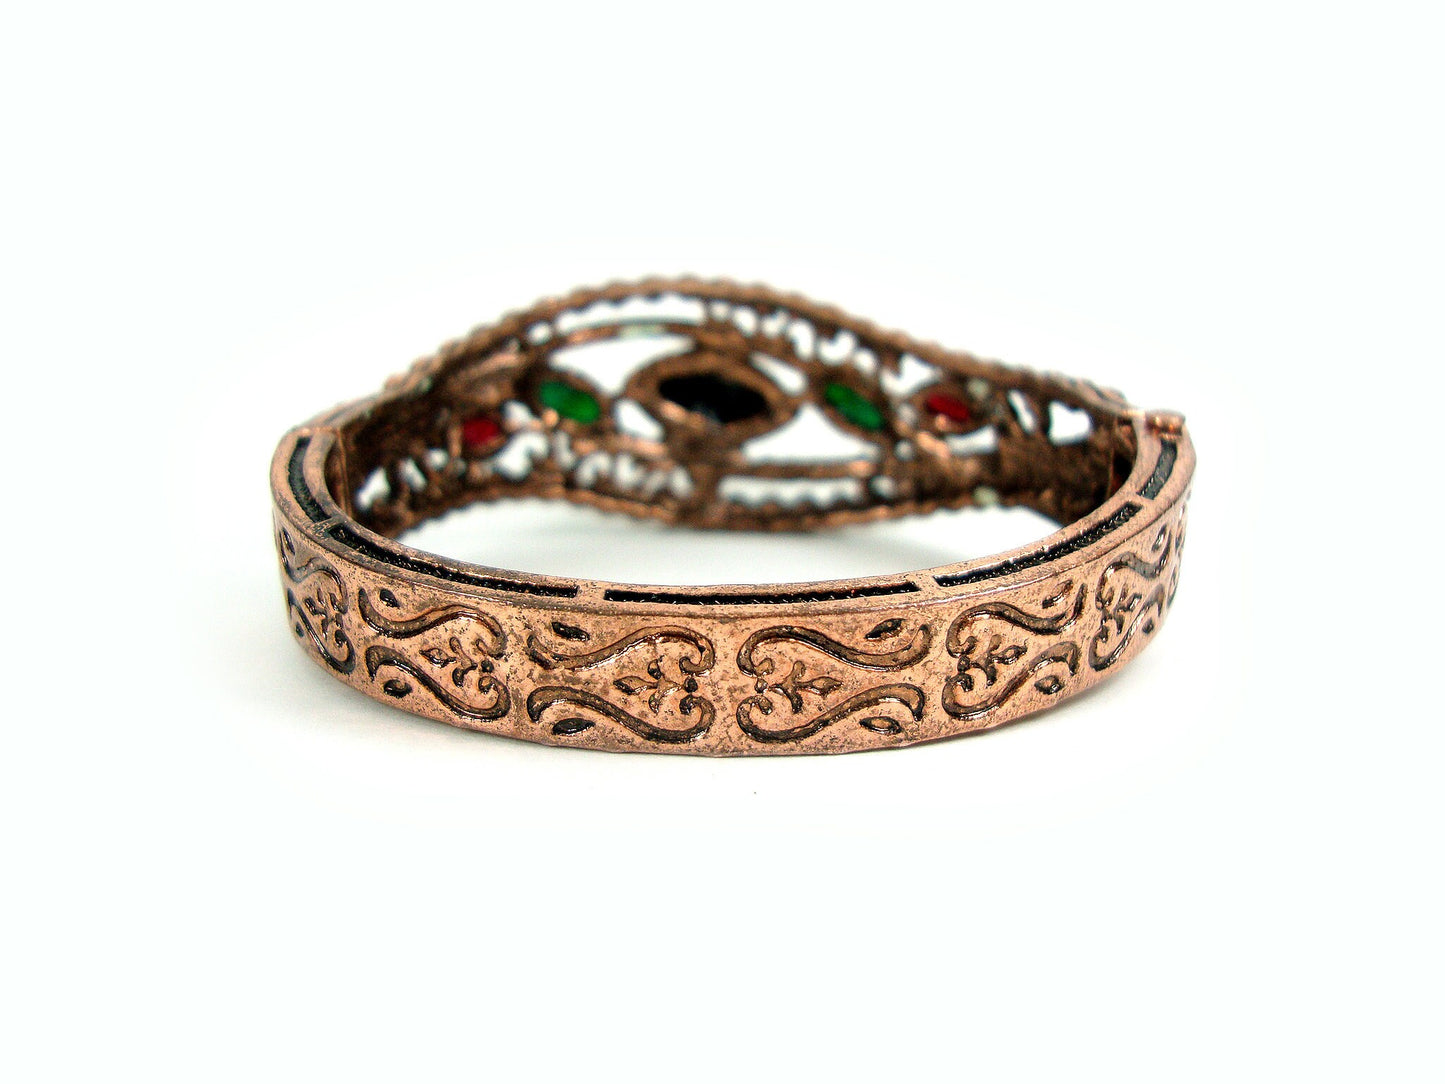 Byzantinisches griechisches Armreif gebogenes Design, byzantinisches Armband, türkisches Armband, türkischer Schmuck, traditionelles Armband, antikes Armband